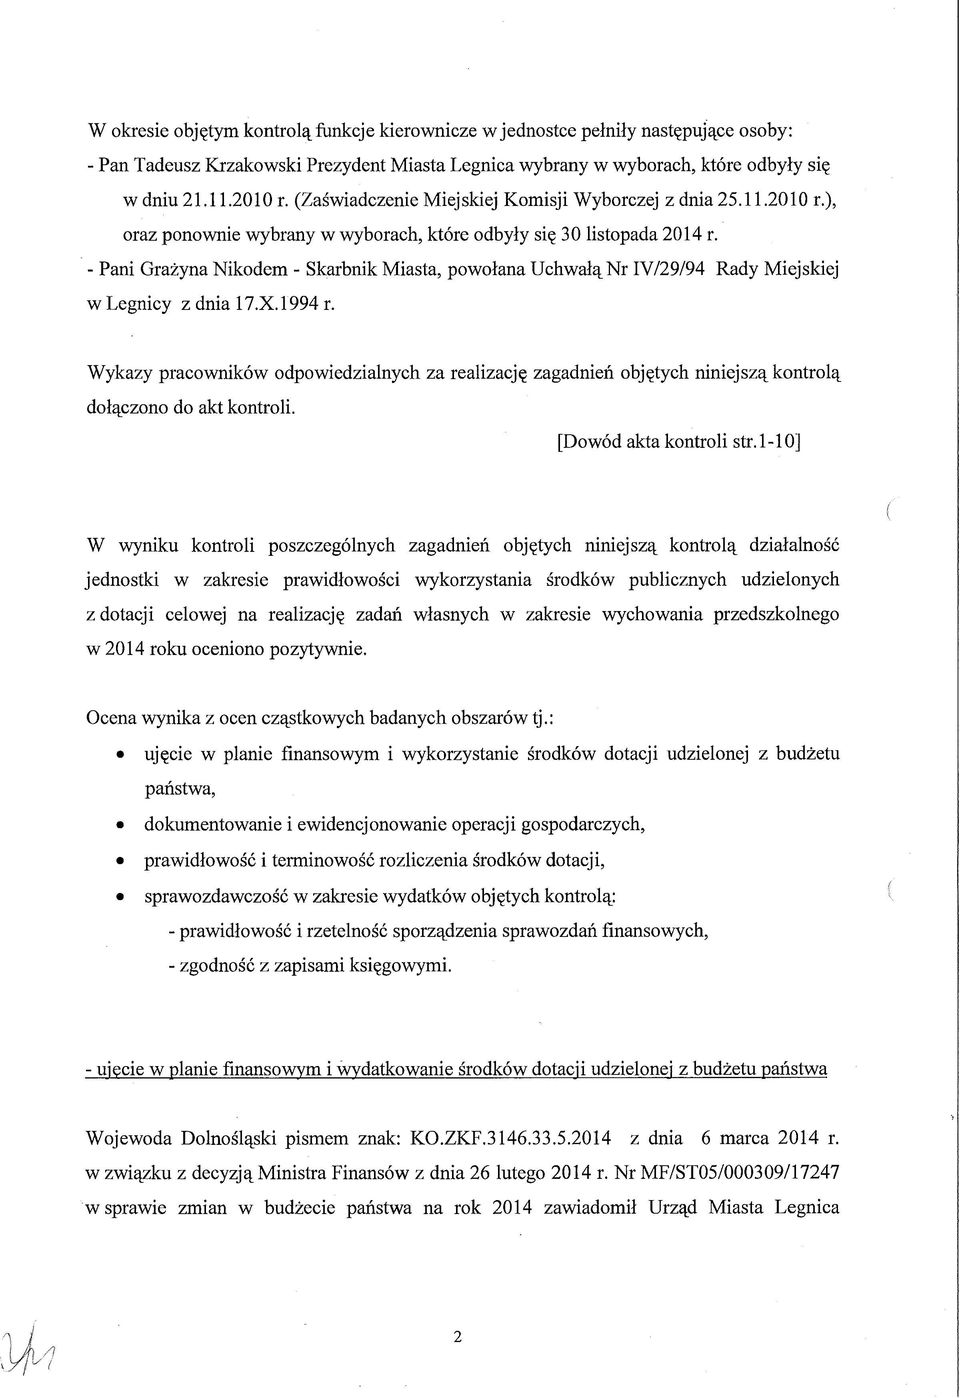 - Pani Grażyna Nikodem - Skarbnik Miasta, powołana Uchwałą Nr IV/29/94 Rady Miejskiej w Legnicy z dnia 17.X.1994 r.